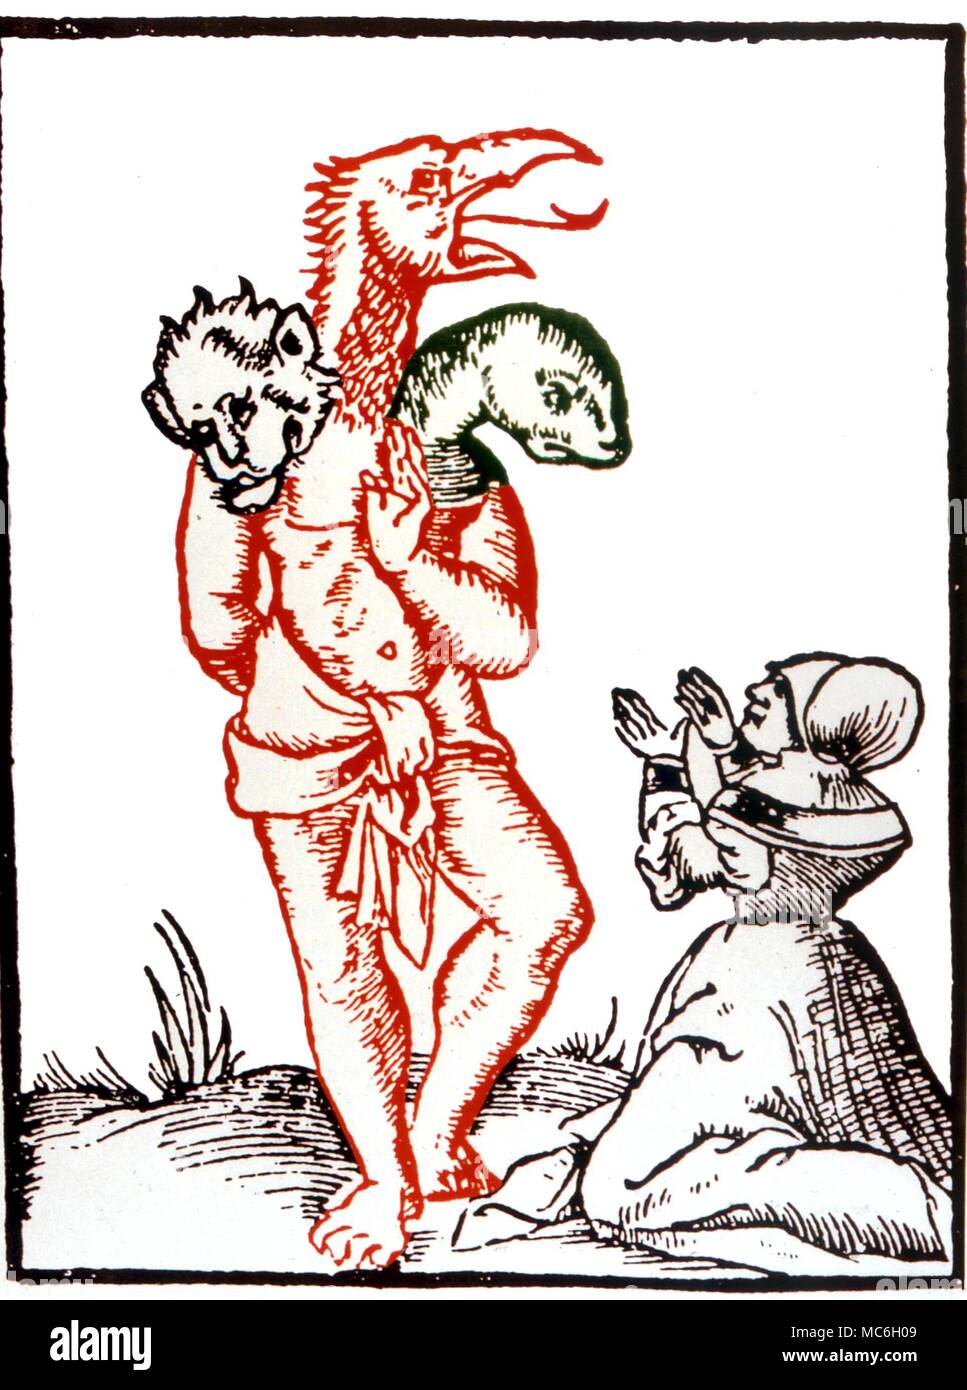 Monstruos un monstruo creado por una bruja ante el Rey de los Francos, Marcomir. Después de Sebastian Münster "Geographia Universalis", 1544. Foto de stock